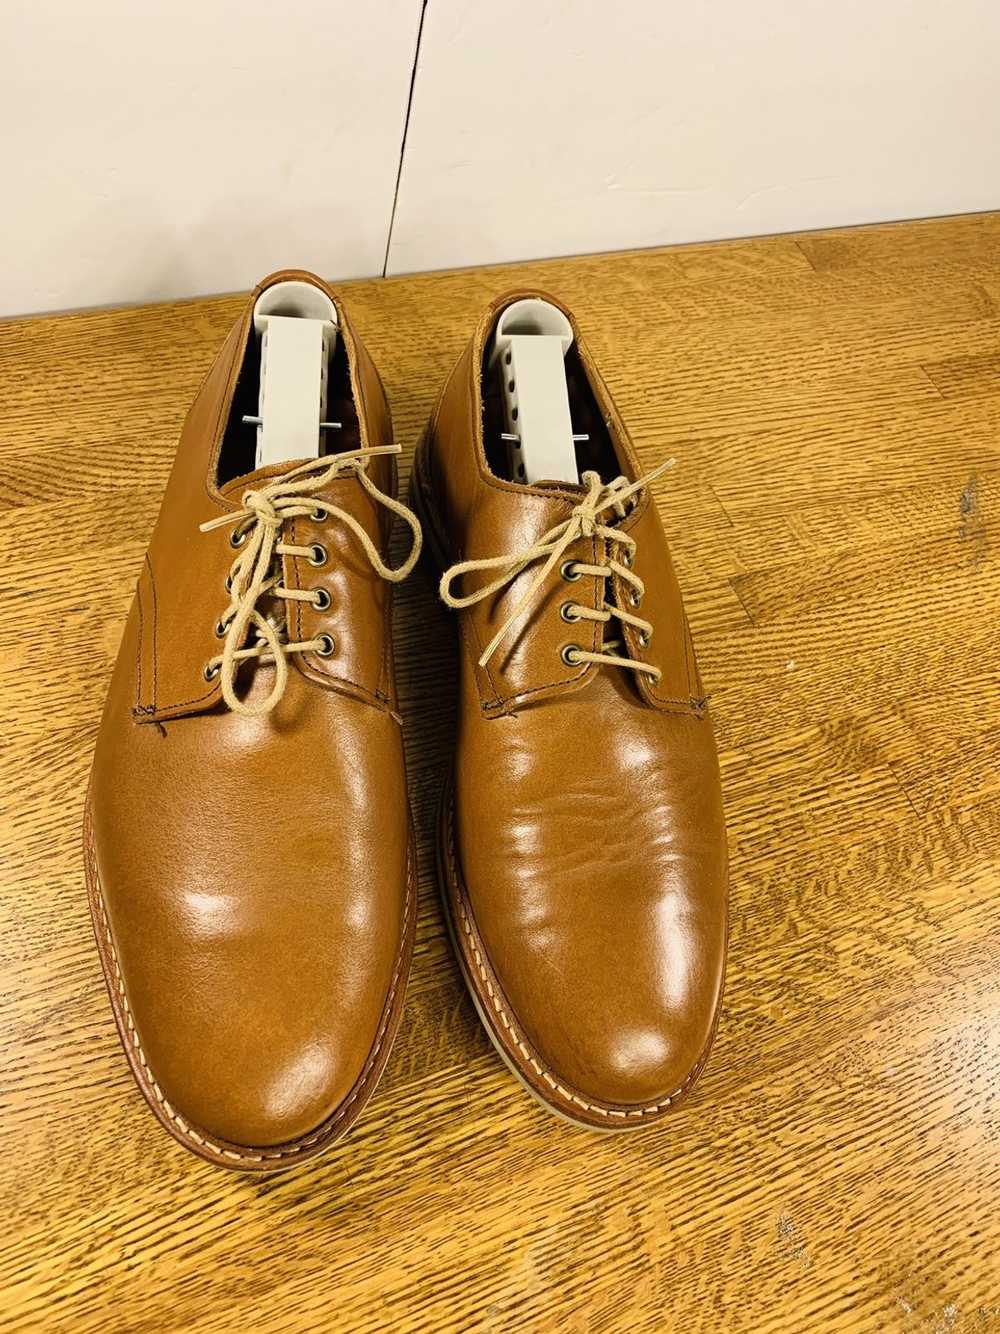 Allen Edmonds Allen Edmonds Men’s Oxfords Shoes - image 5